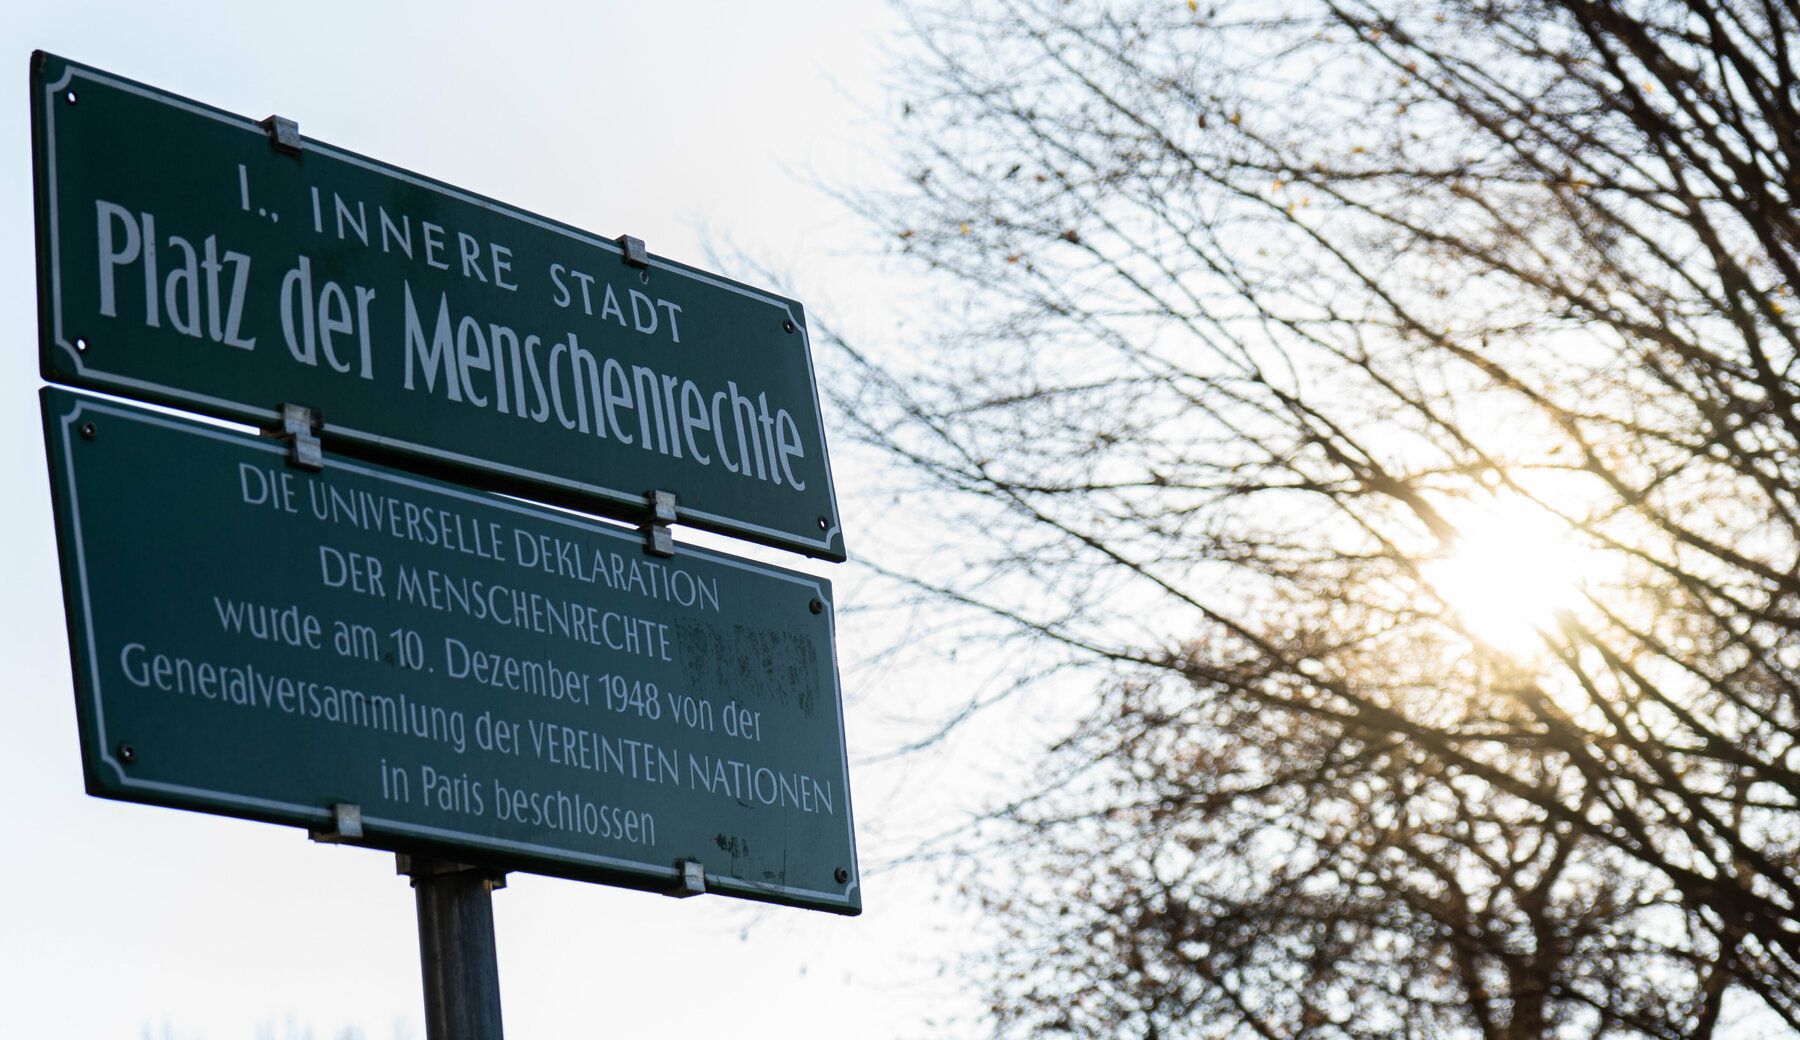 Straßenschild in Graz mit der Aufschrift: "Platz der Menschenrechte. Die universelle Deklaration der Menschenrechte wurde am 10. Dezember 1948 von der Generalversammlung der Vereinten Nationen in Paris beschlossen."